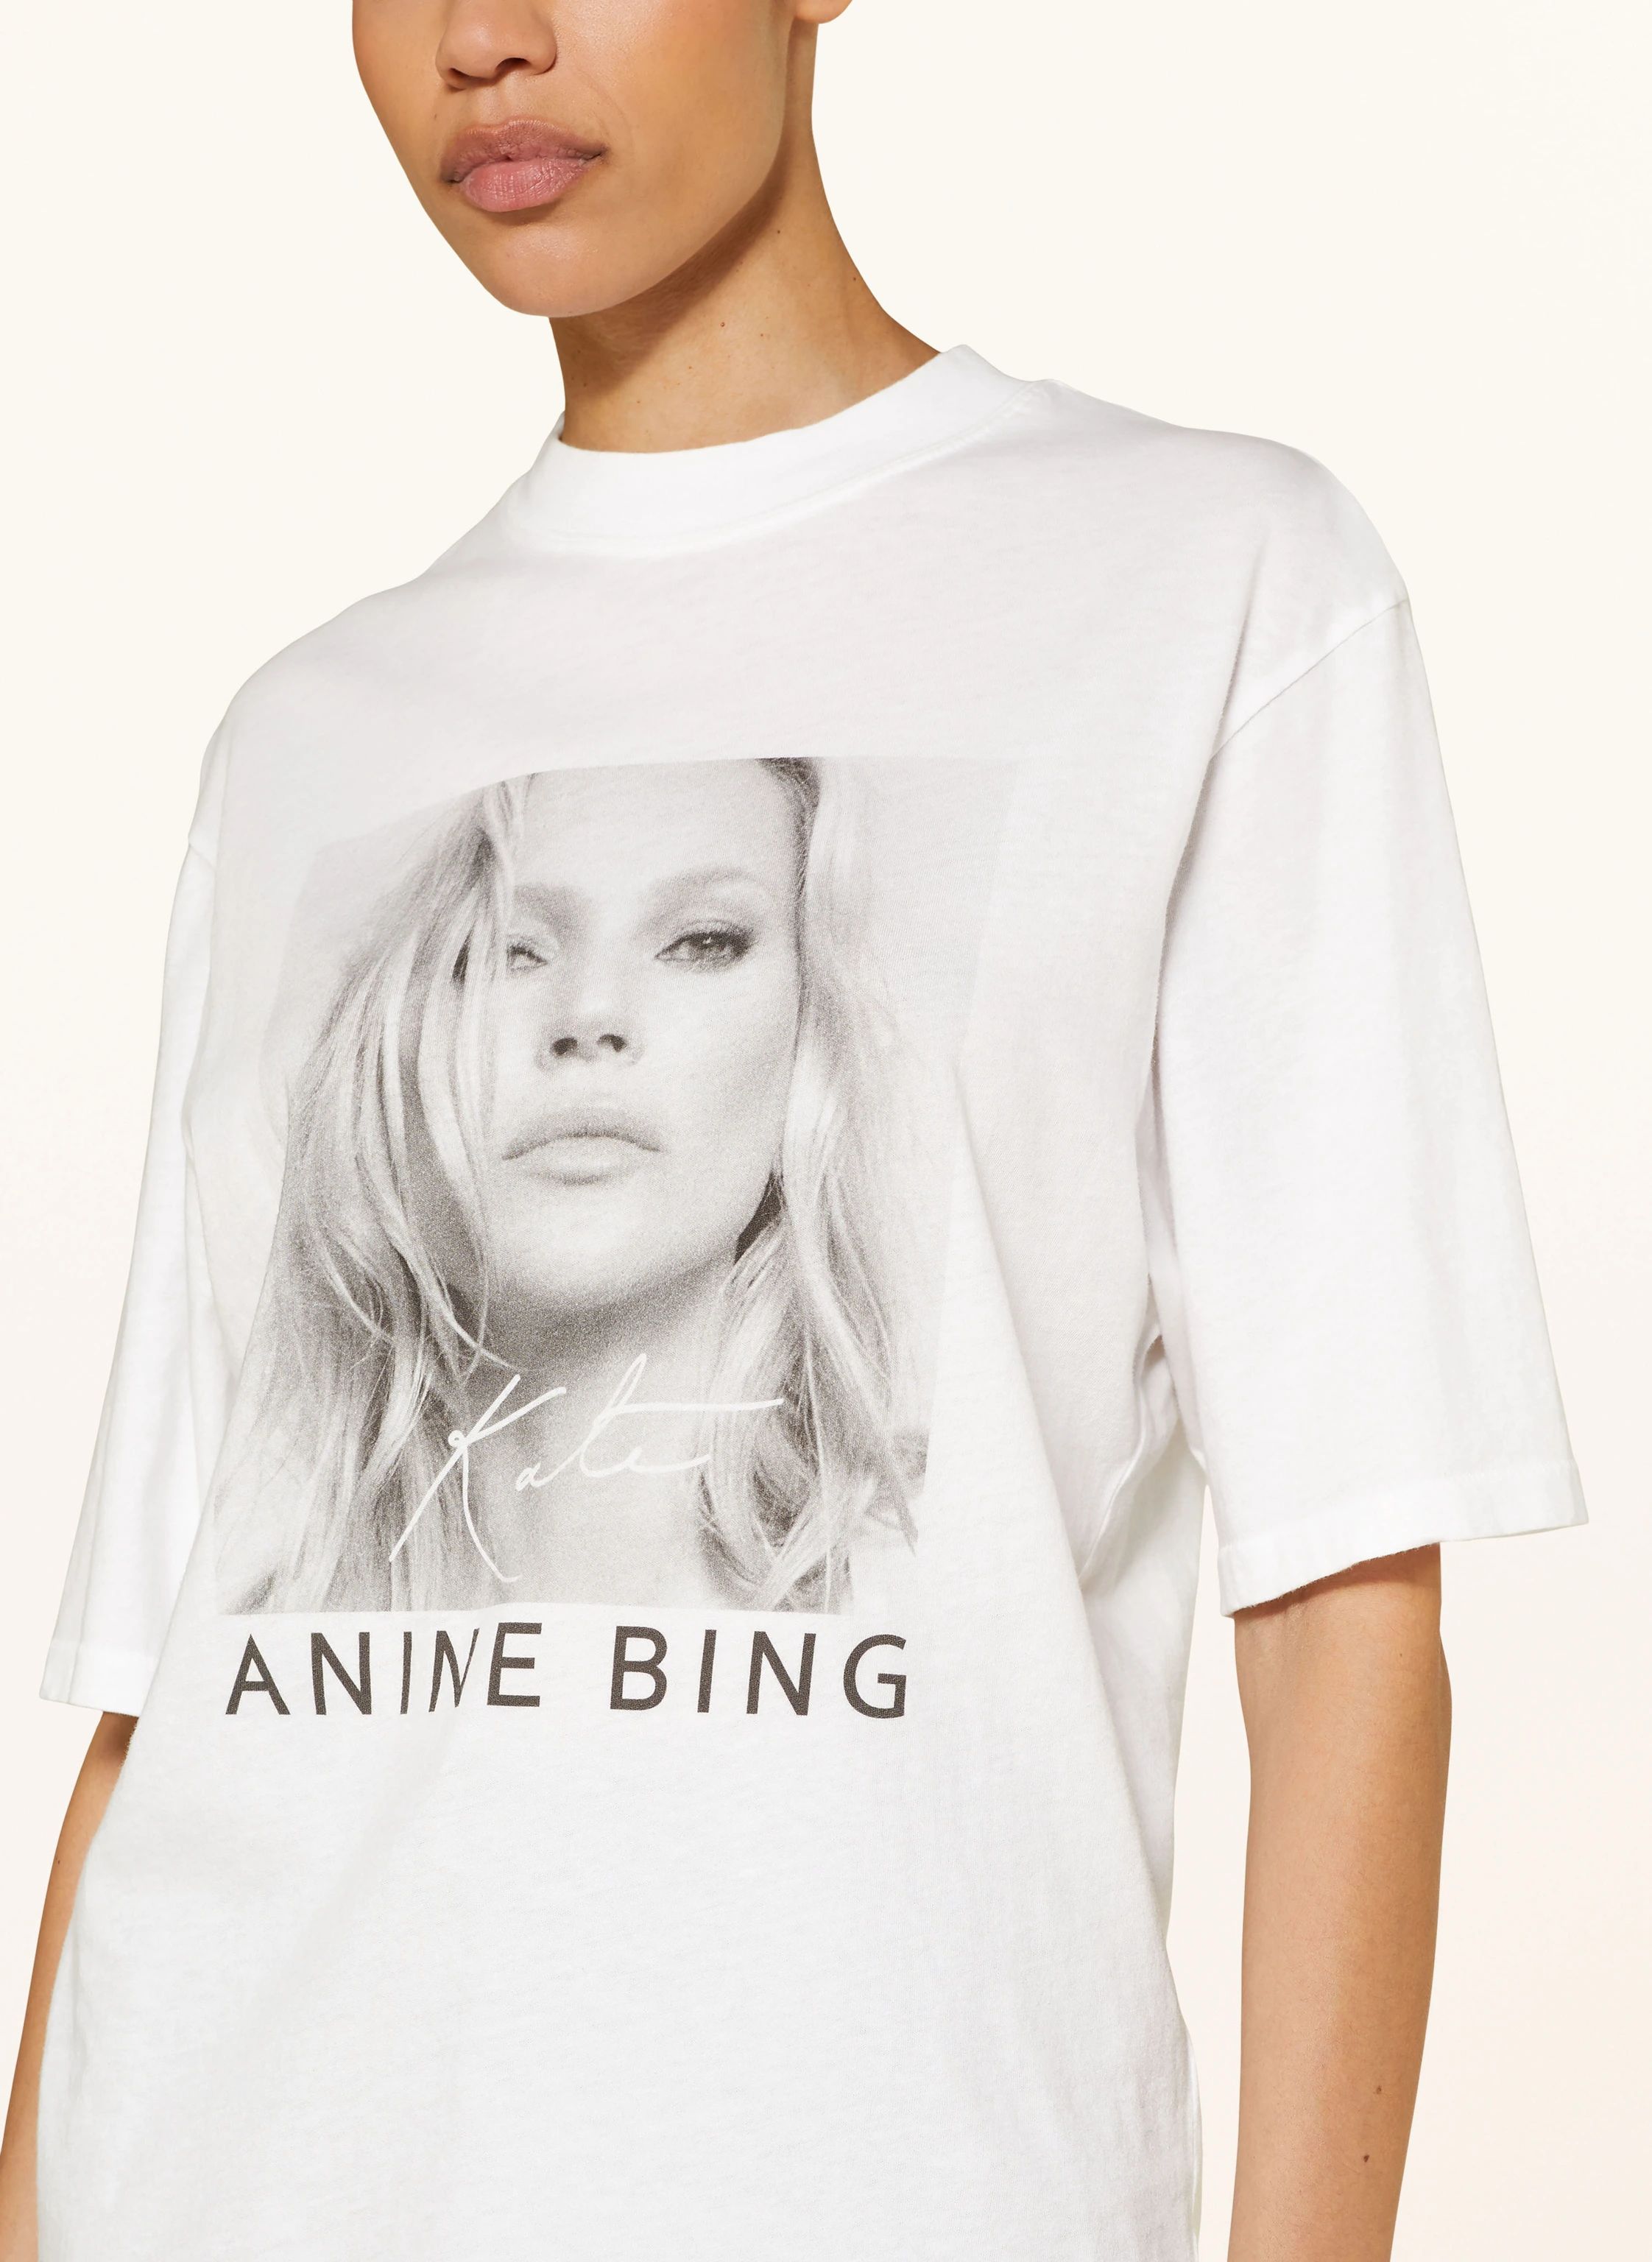 ANINE BING T-Shirt AVI in weiss | Breuninger (DACH)